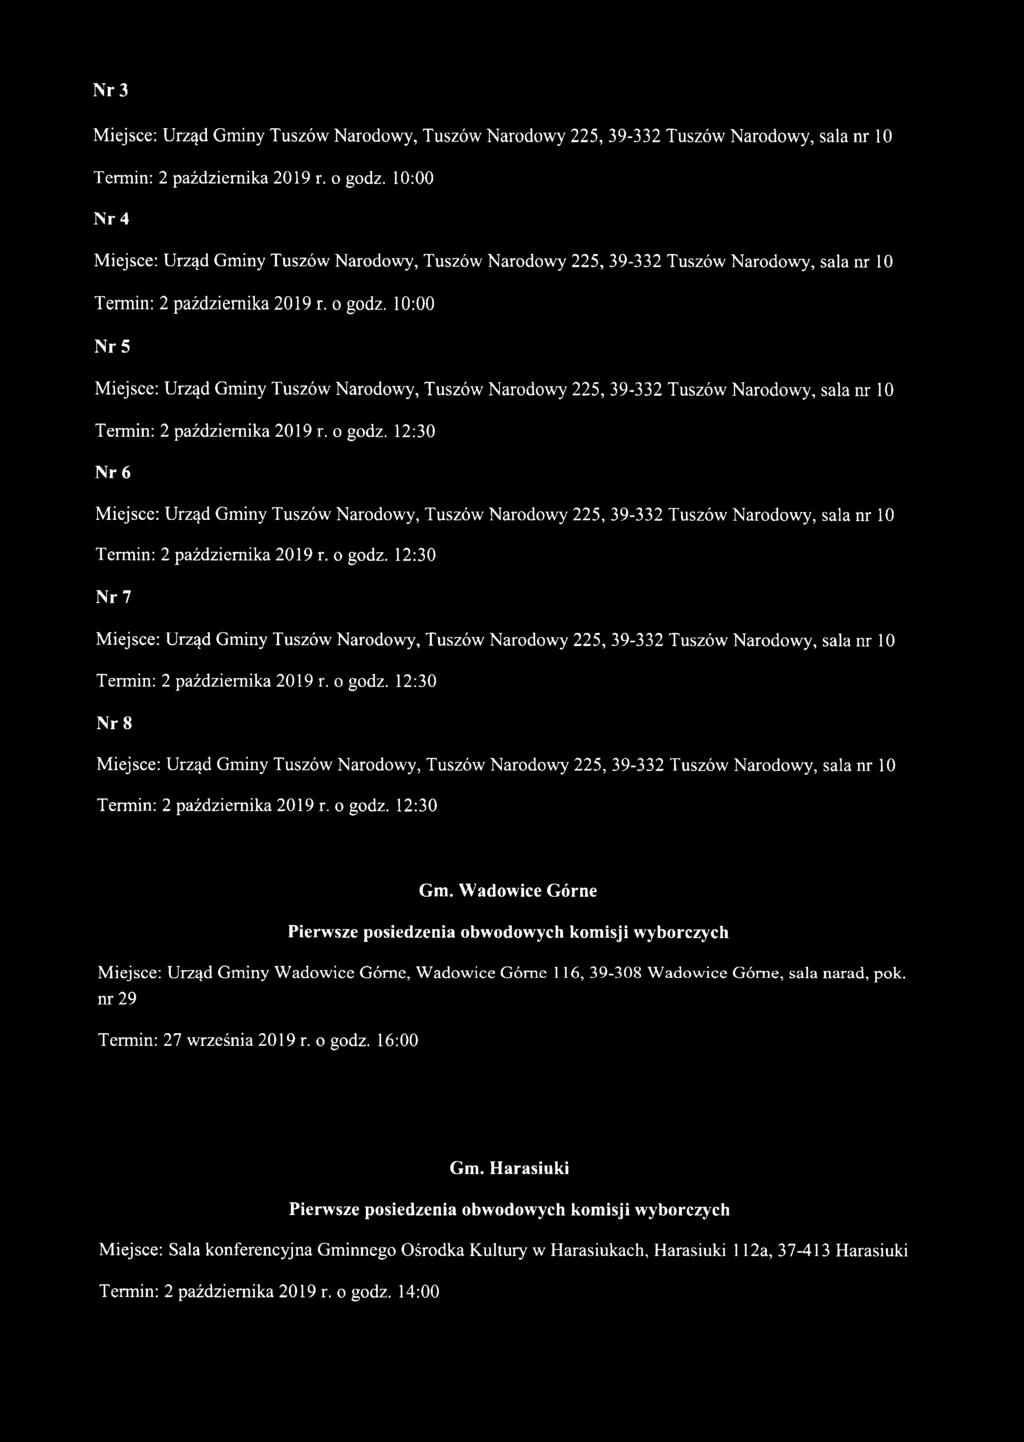 Wadowice Górne Miejsce: Urząd Gminy Wadowice Górne, Wadowice Górne 116, 39-308 Wadowice Górne, sala narad, pok. nr 29 Termin: 27 września 2019 r. o godz.